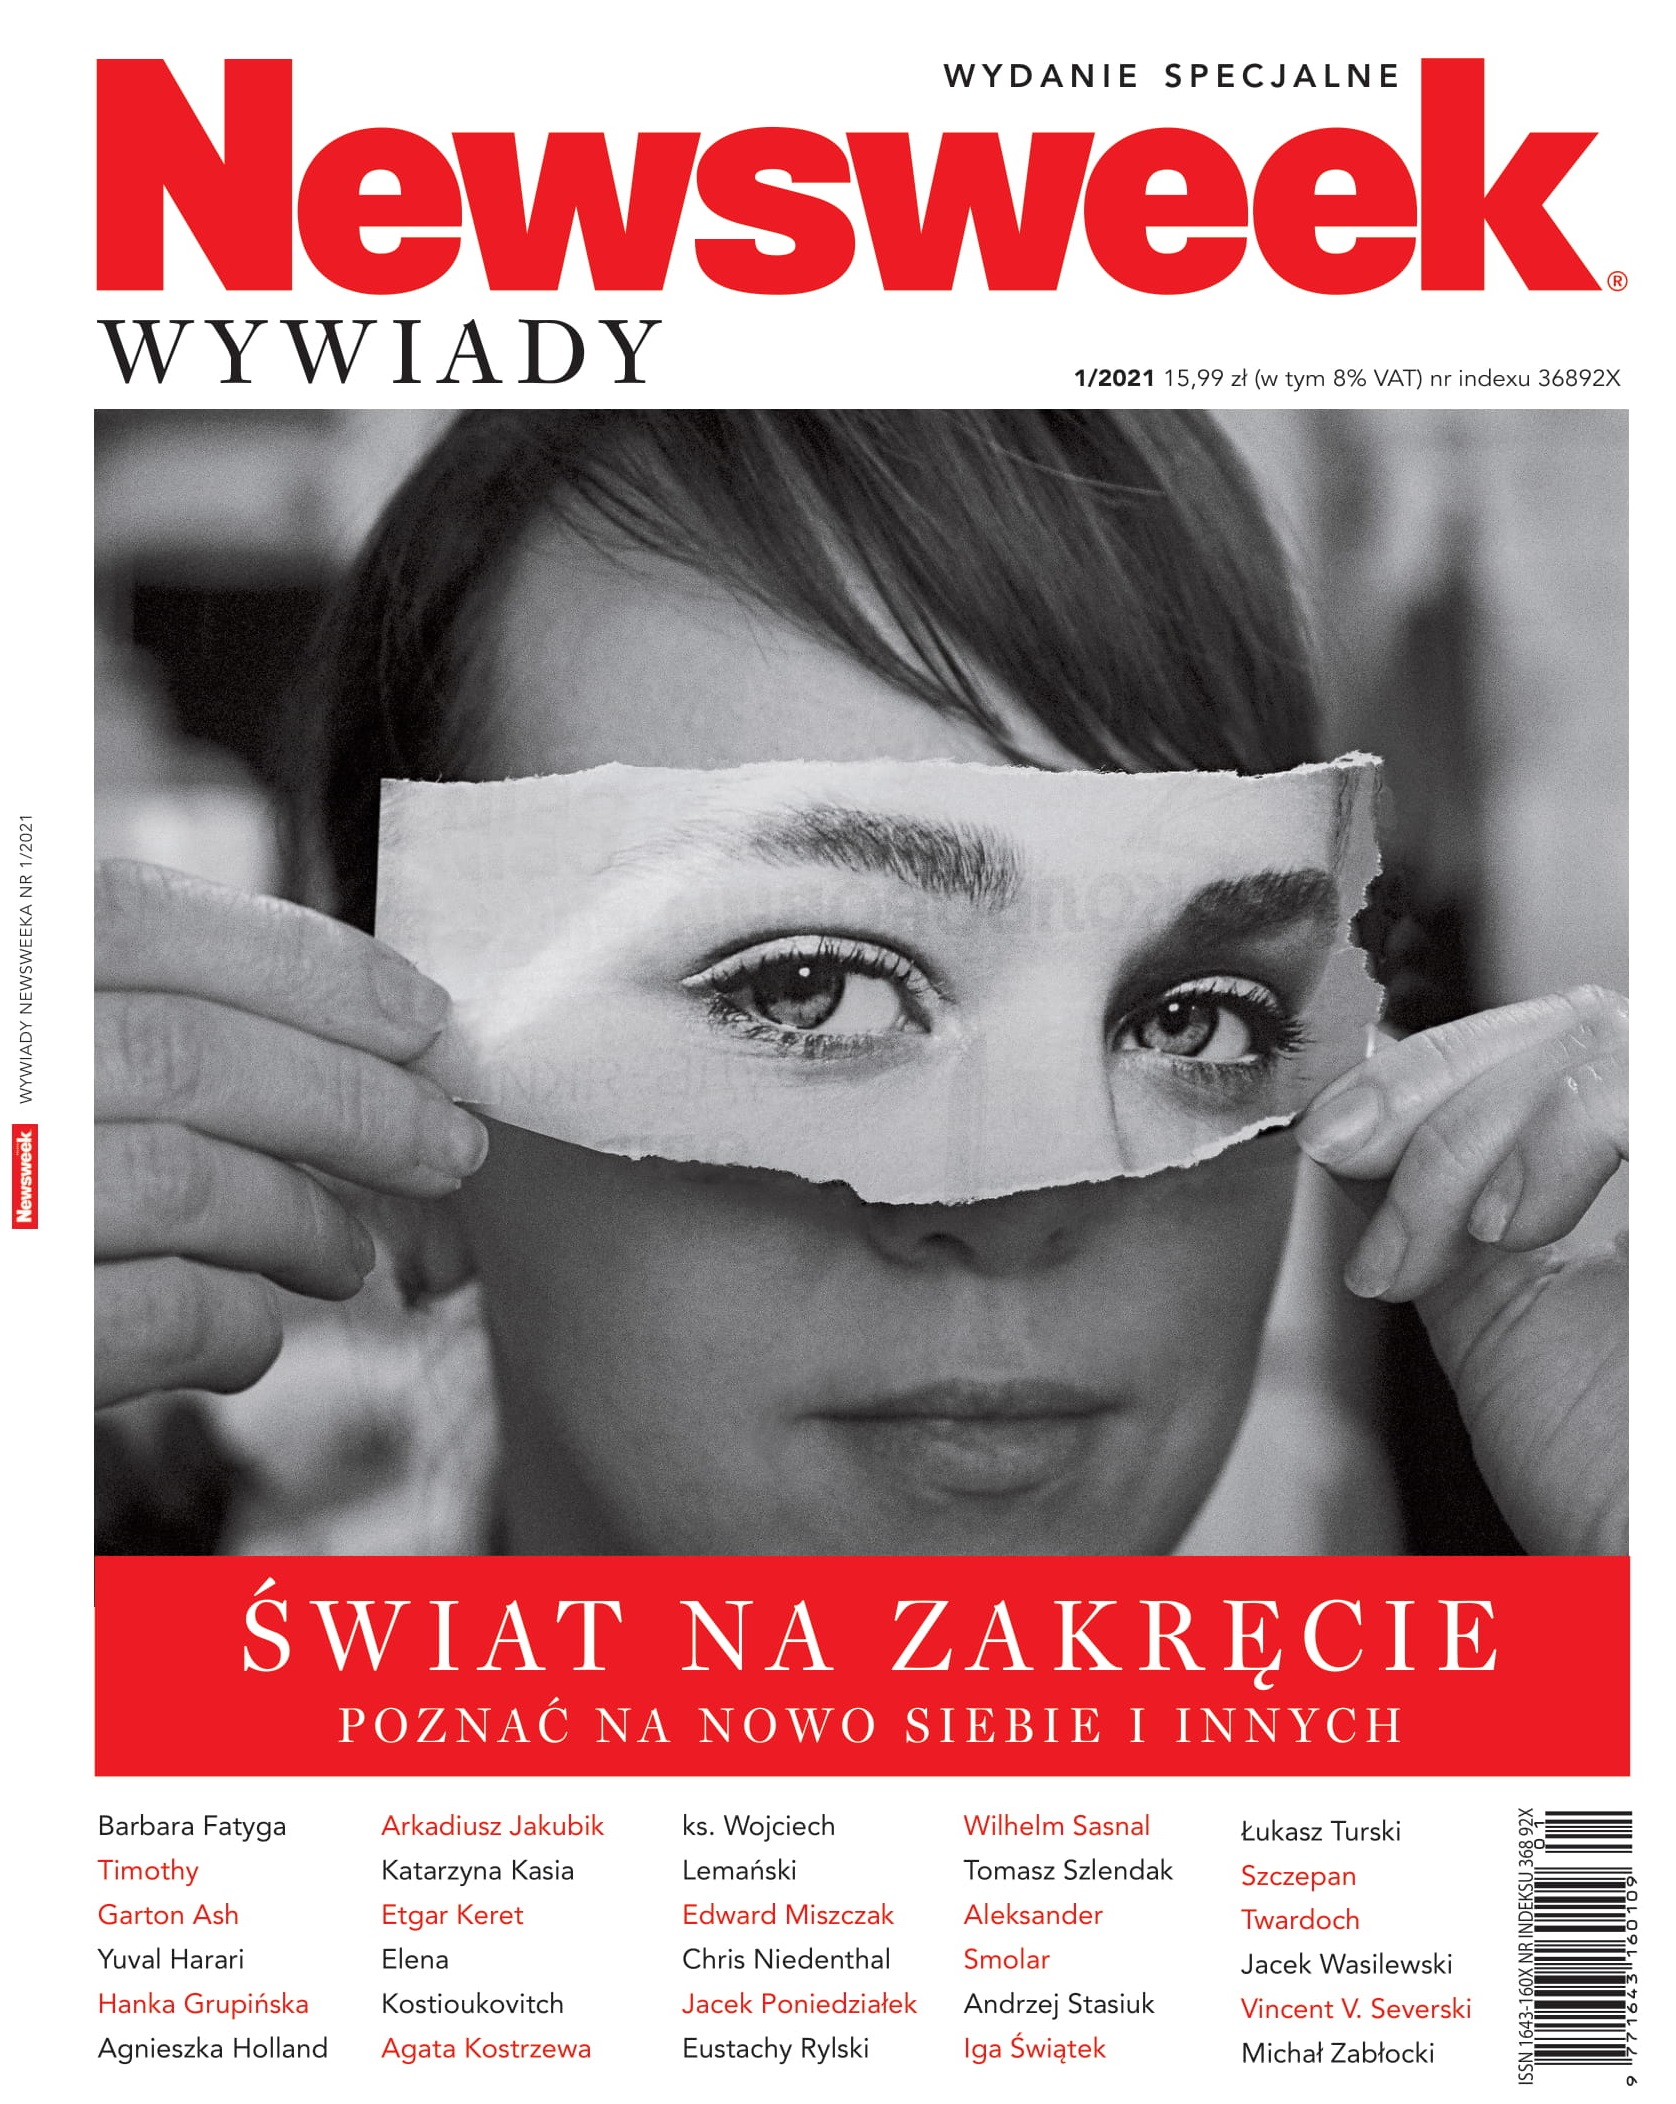 Newsweek Wydanie Specjalne 1/2021: Wywiady